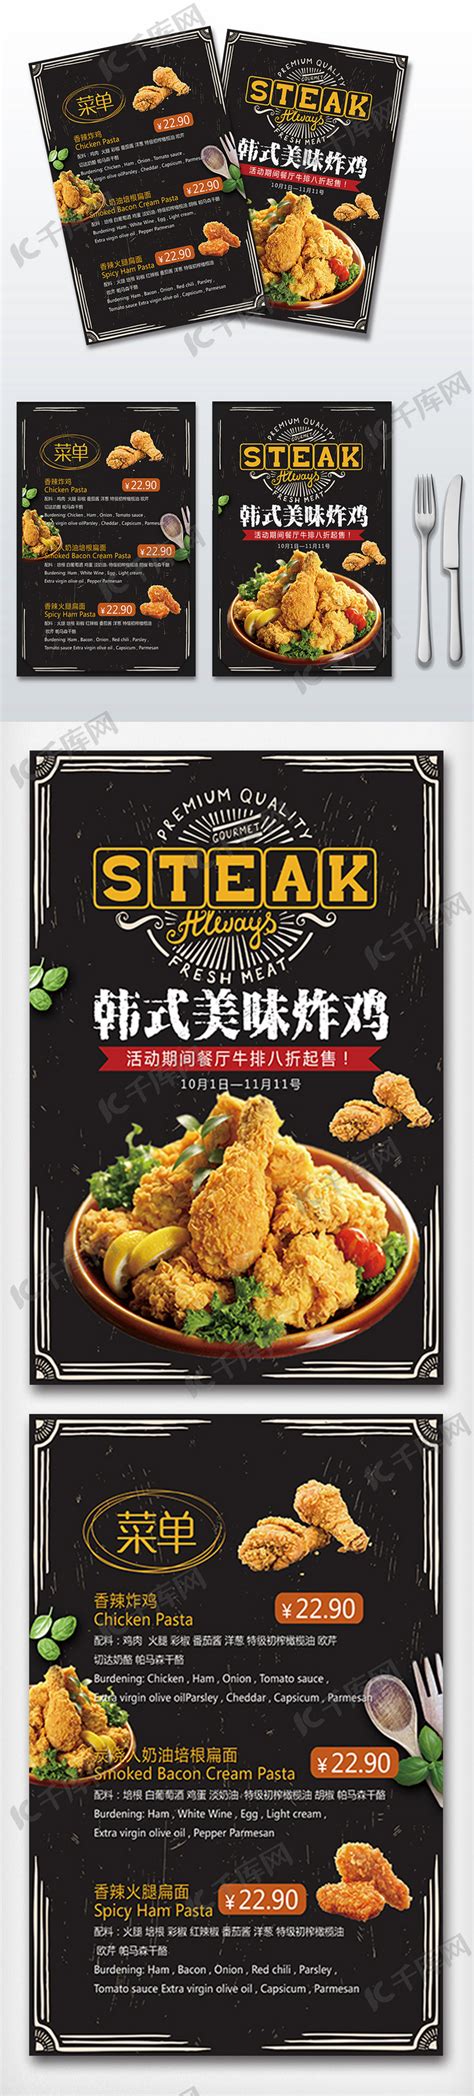 2018年黑色高端大气炸鸡汉堡餐饮菜单海报模板下载-千库网